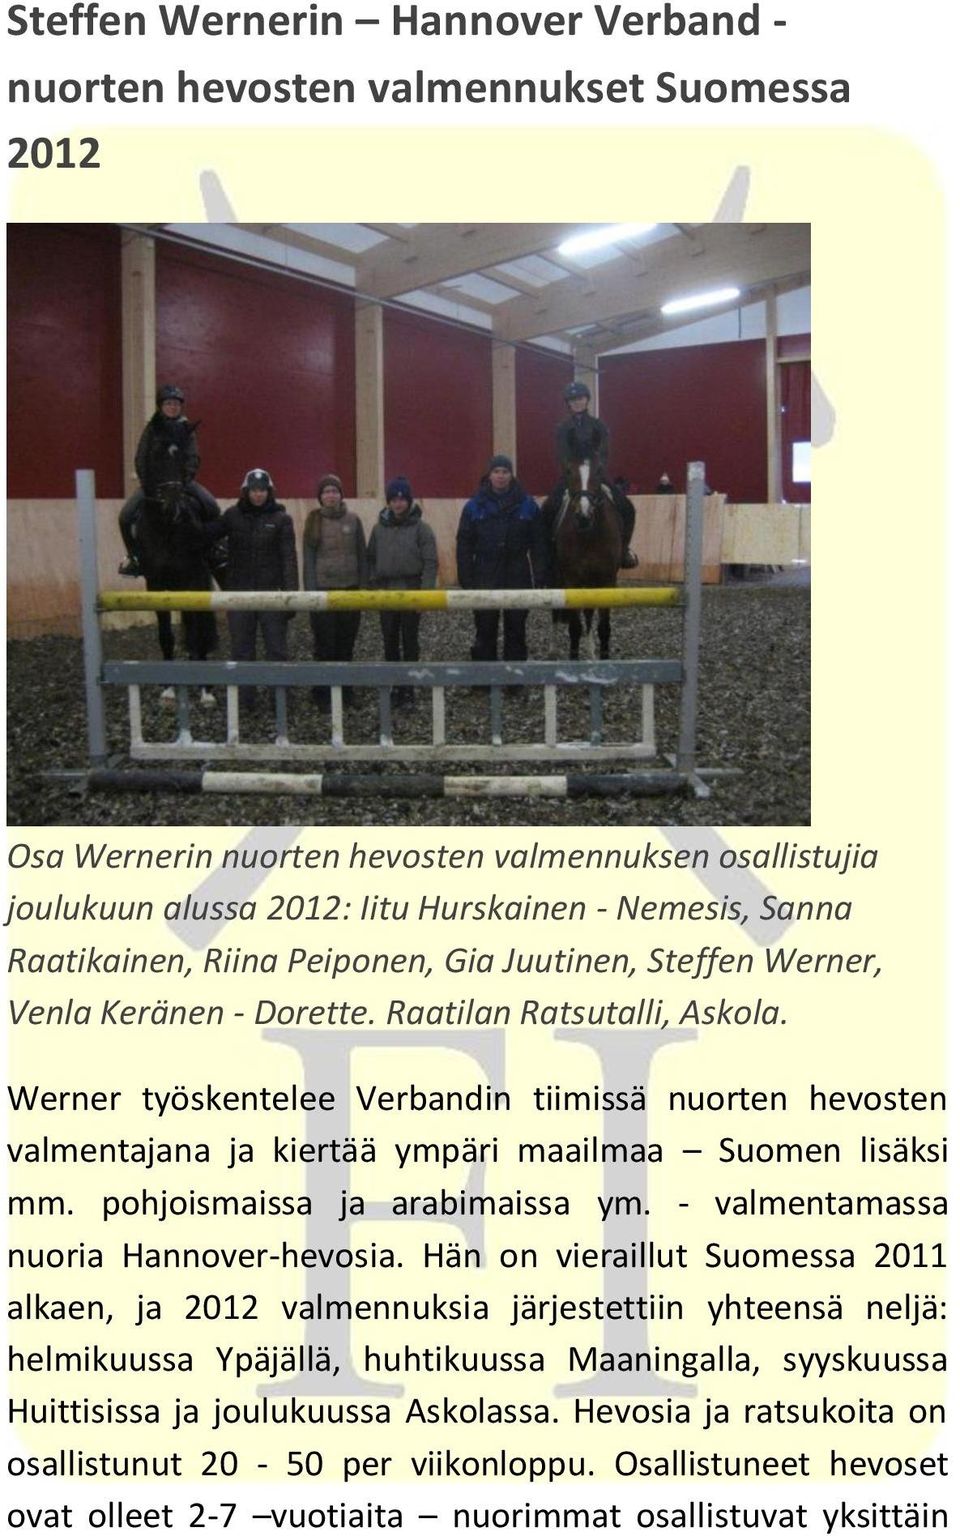 Werner työskentelee Verbandin tiimissä nuorten hevosten valmentajana ja kiertää ympäri maailmaa Suomen lisäksi mm. pohjoismaissa ja arabimaissa ym. - valmentamassa nuoria Hannover-hevosia.